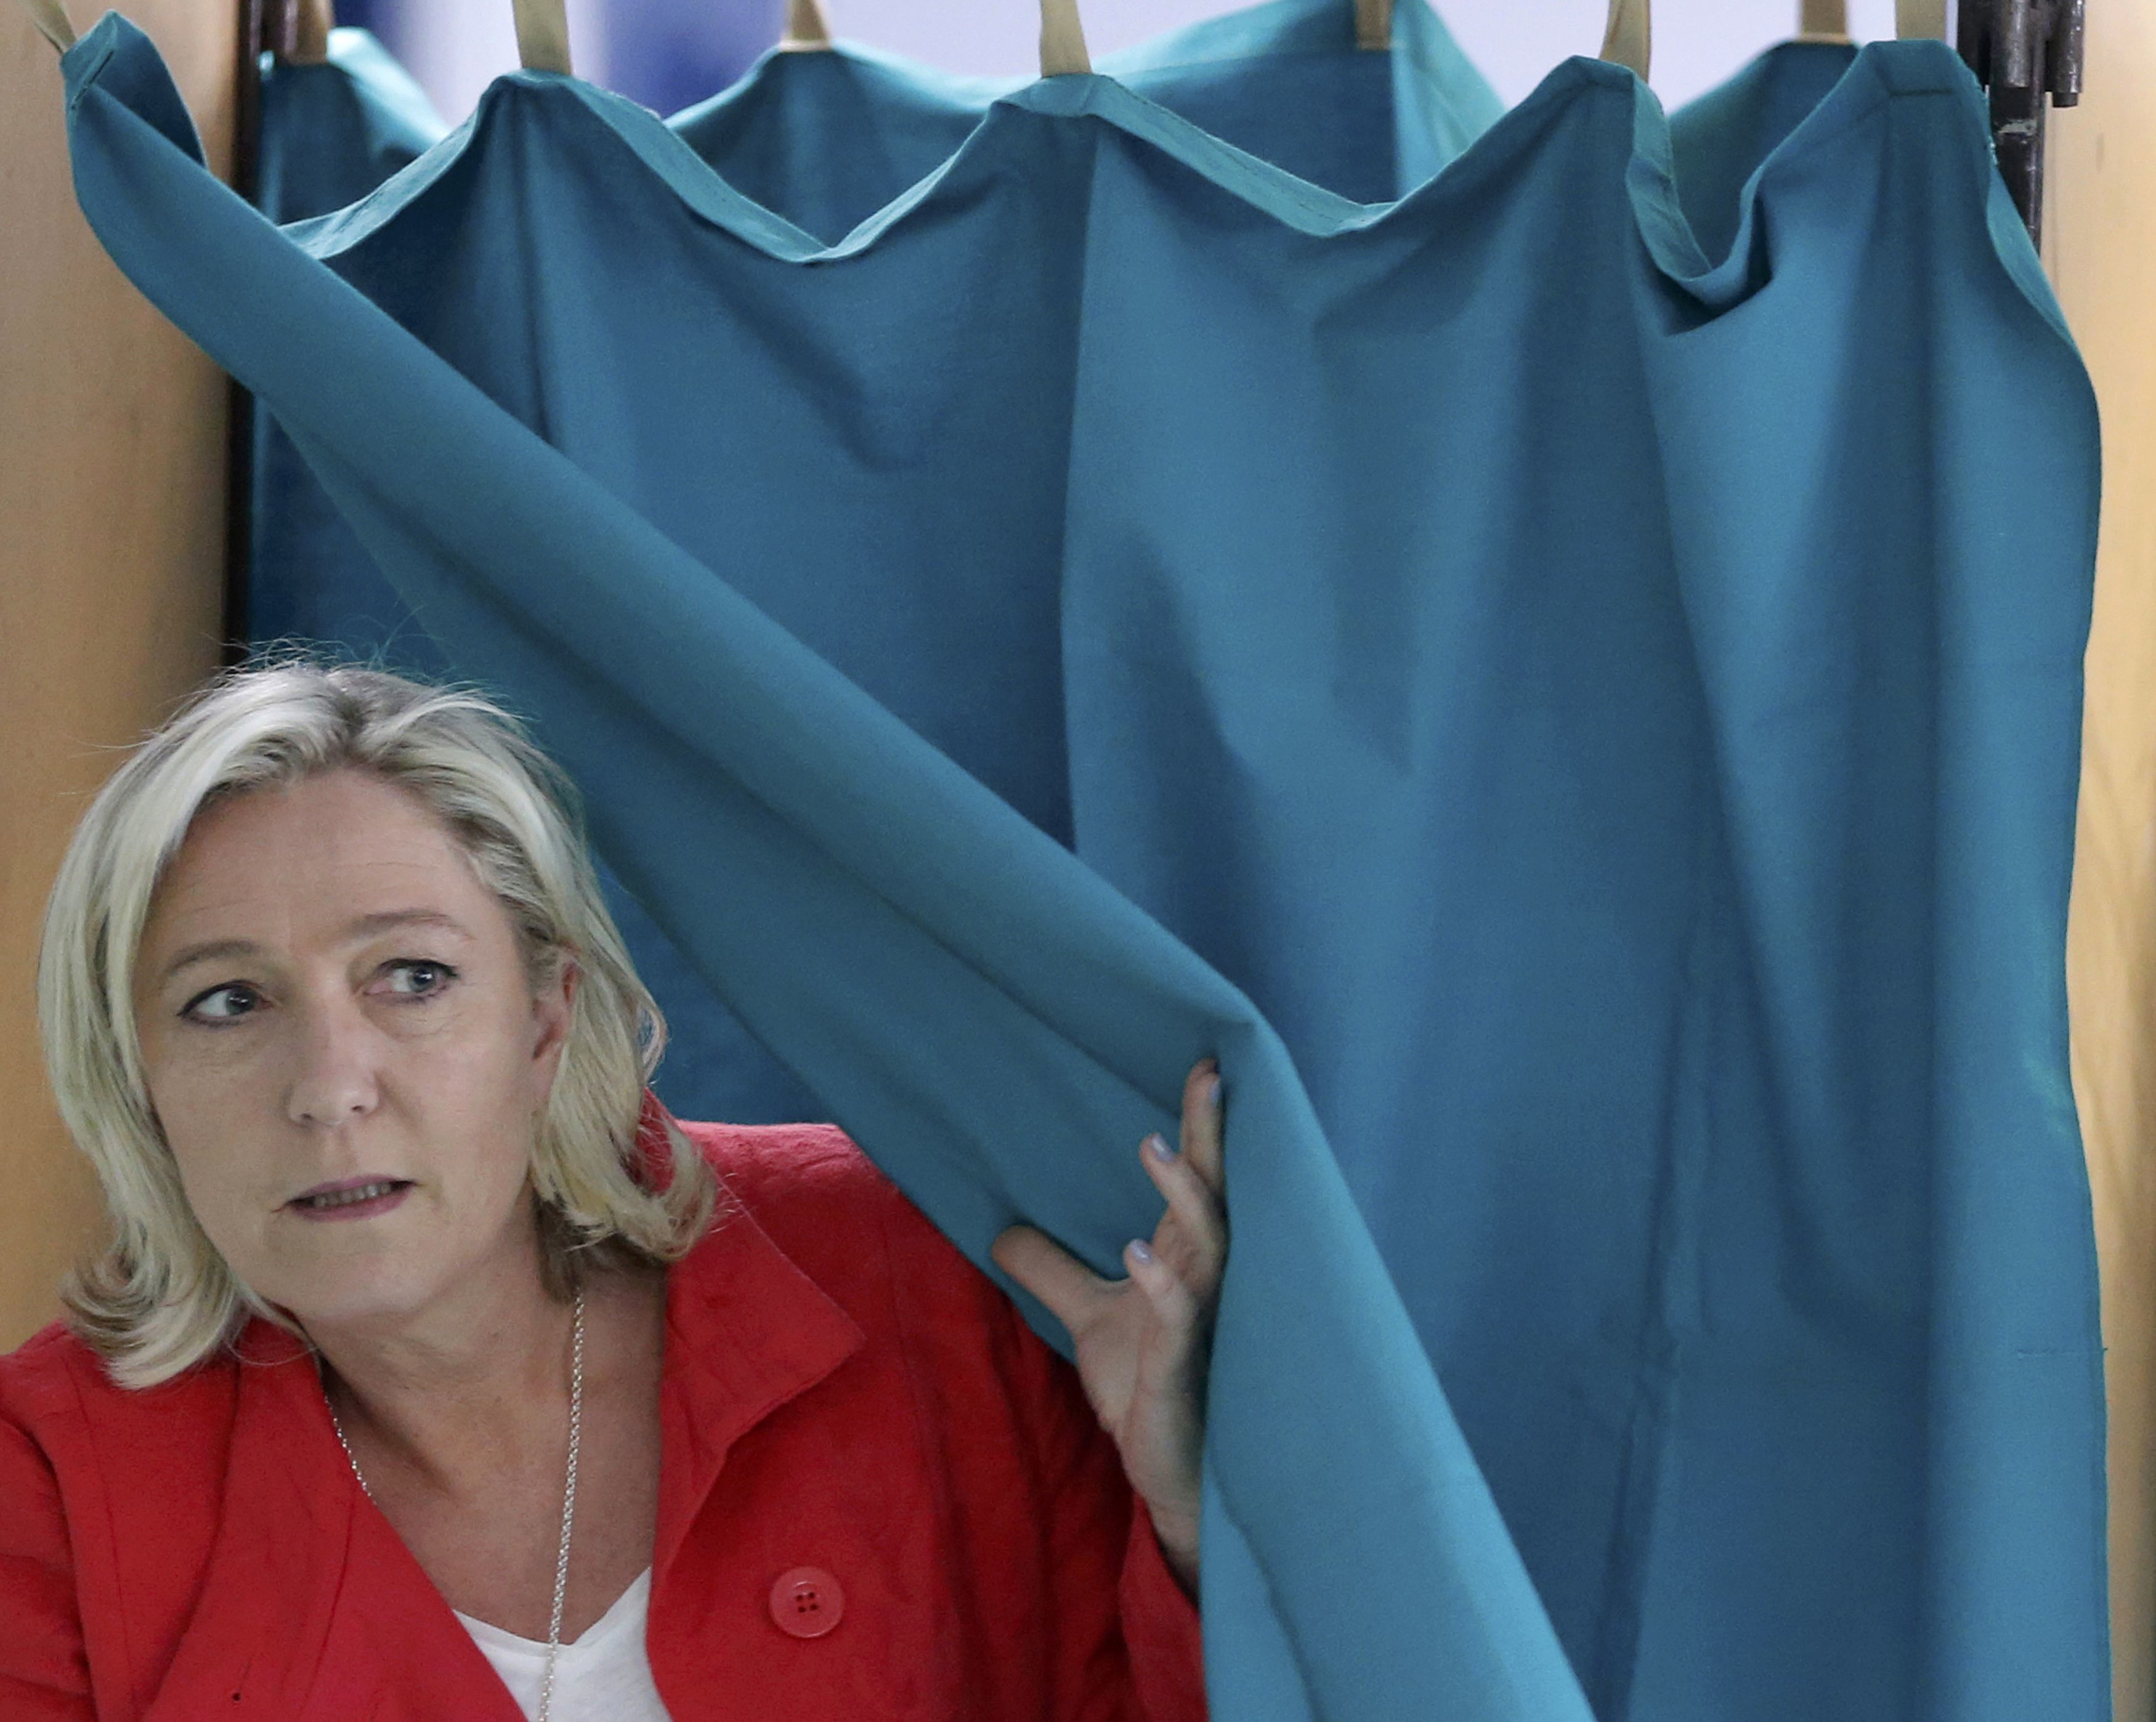 Ευρωεκλογές 2014: Πολιτικός σεισμός από το 25% της ΛεΠεν στη Γαλλία